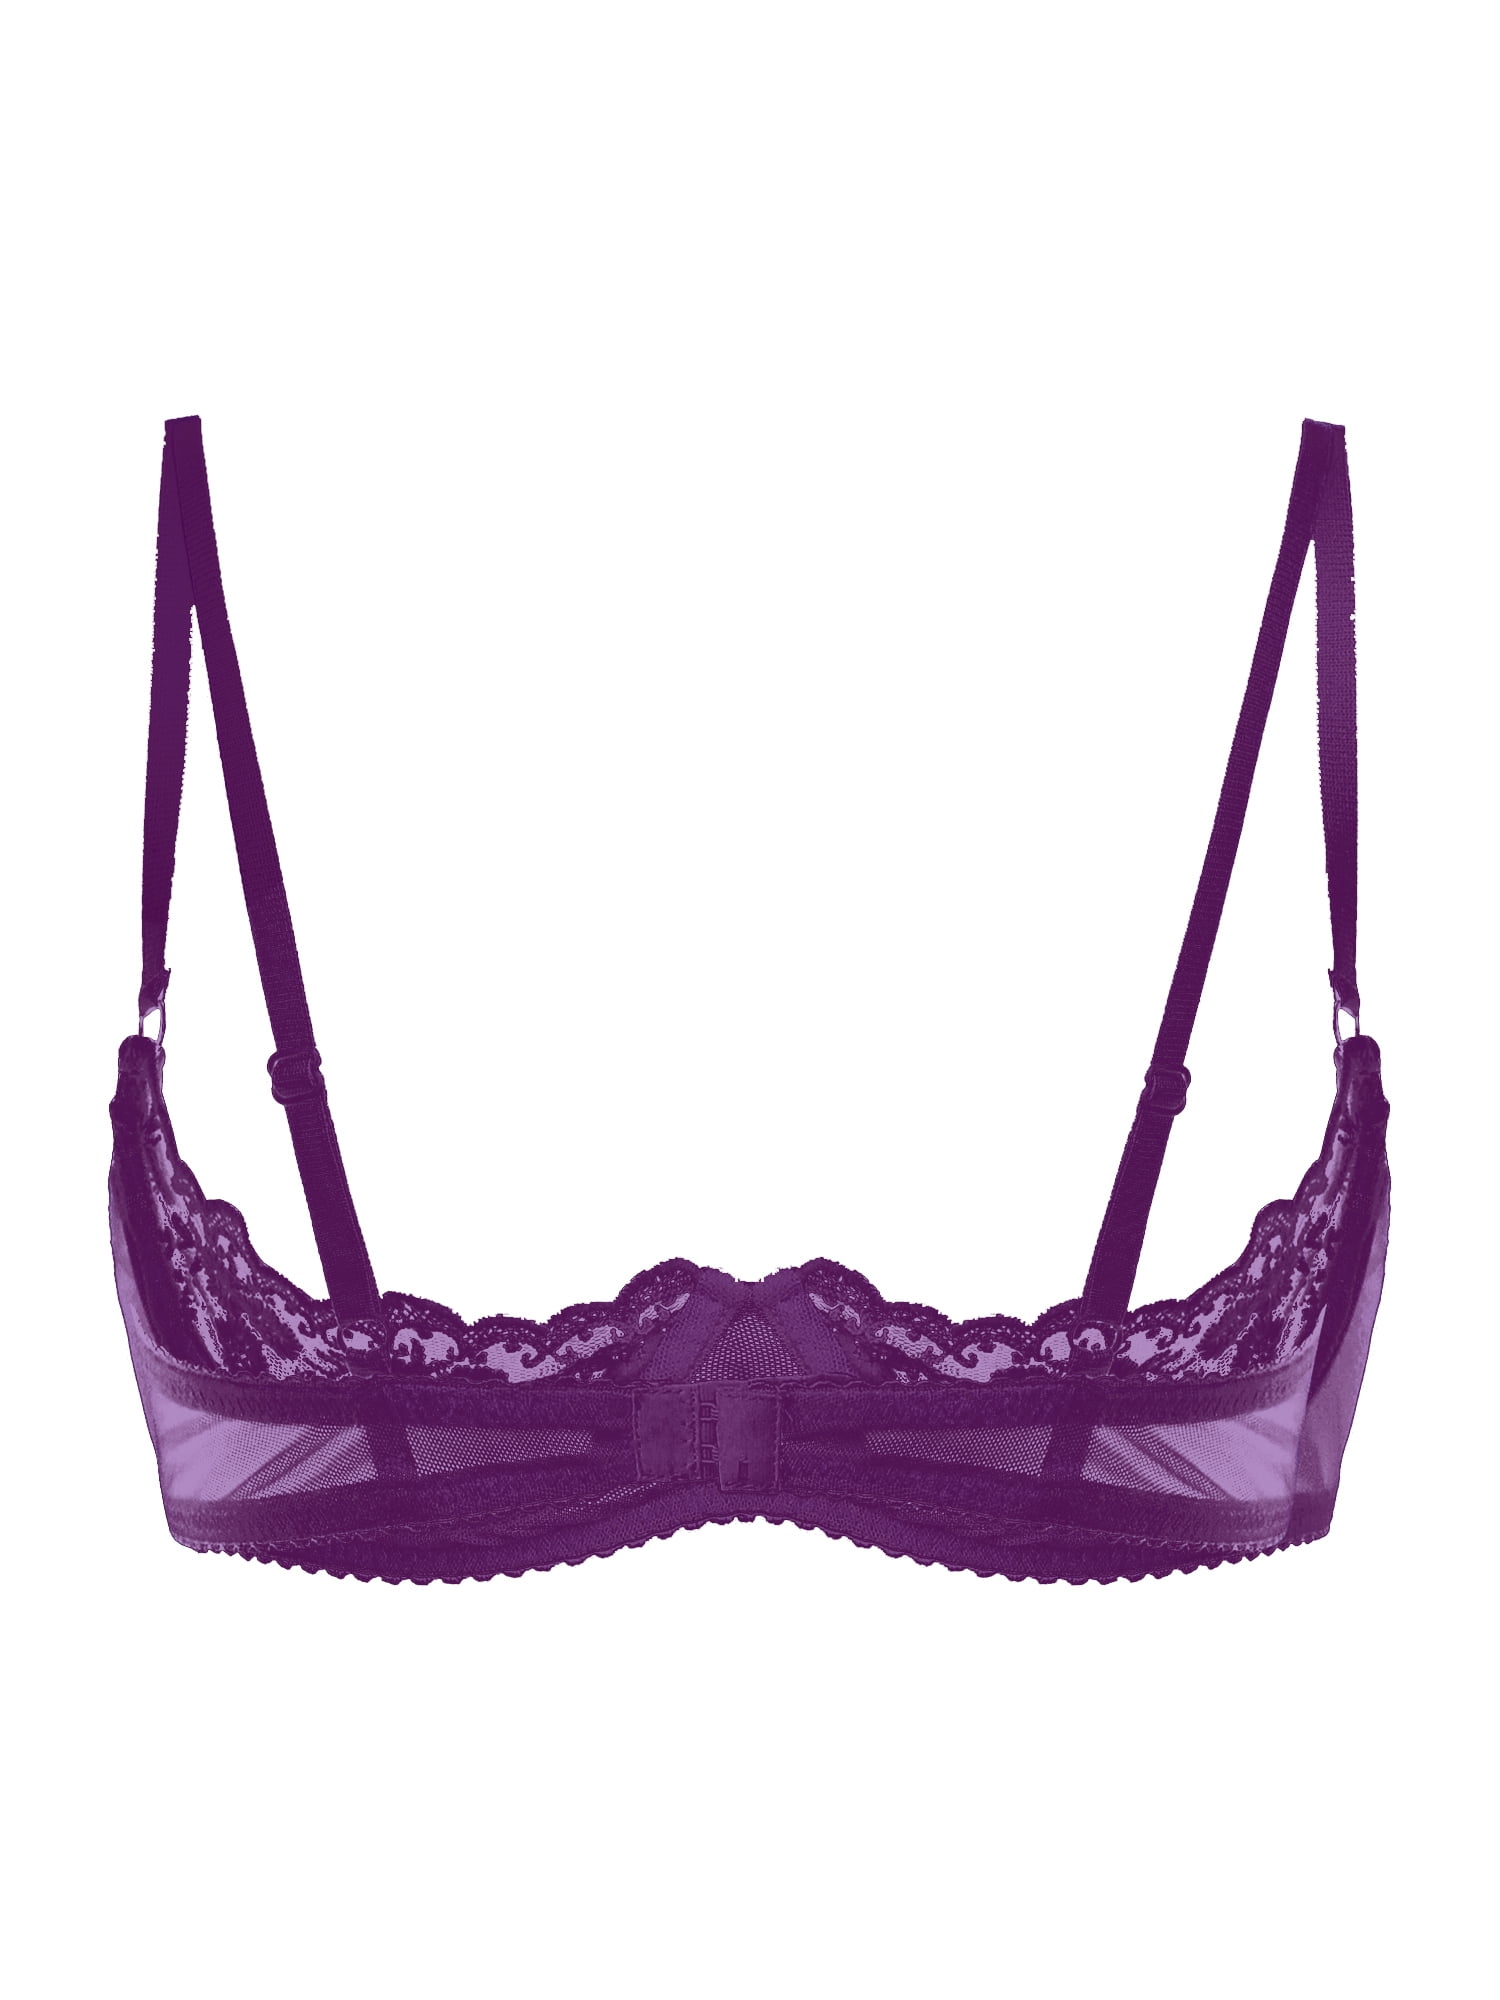 Passionata Sexy Fashion Plunge T Shirt Bra Purple: Wild Berry (Dark Purple)  - Chantilly Online